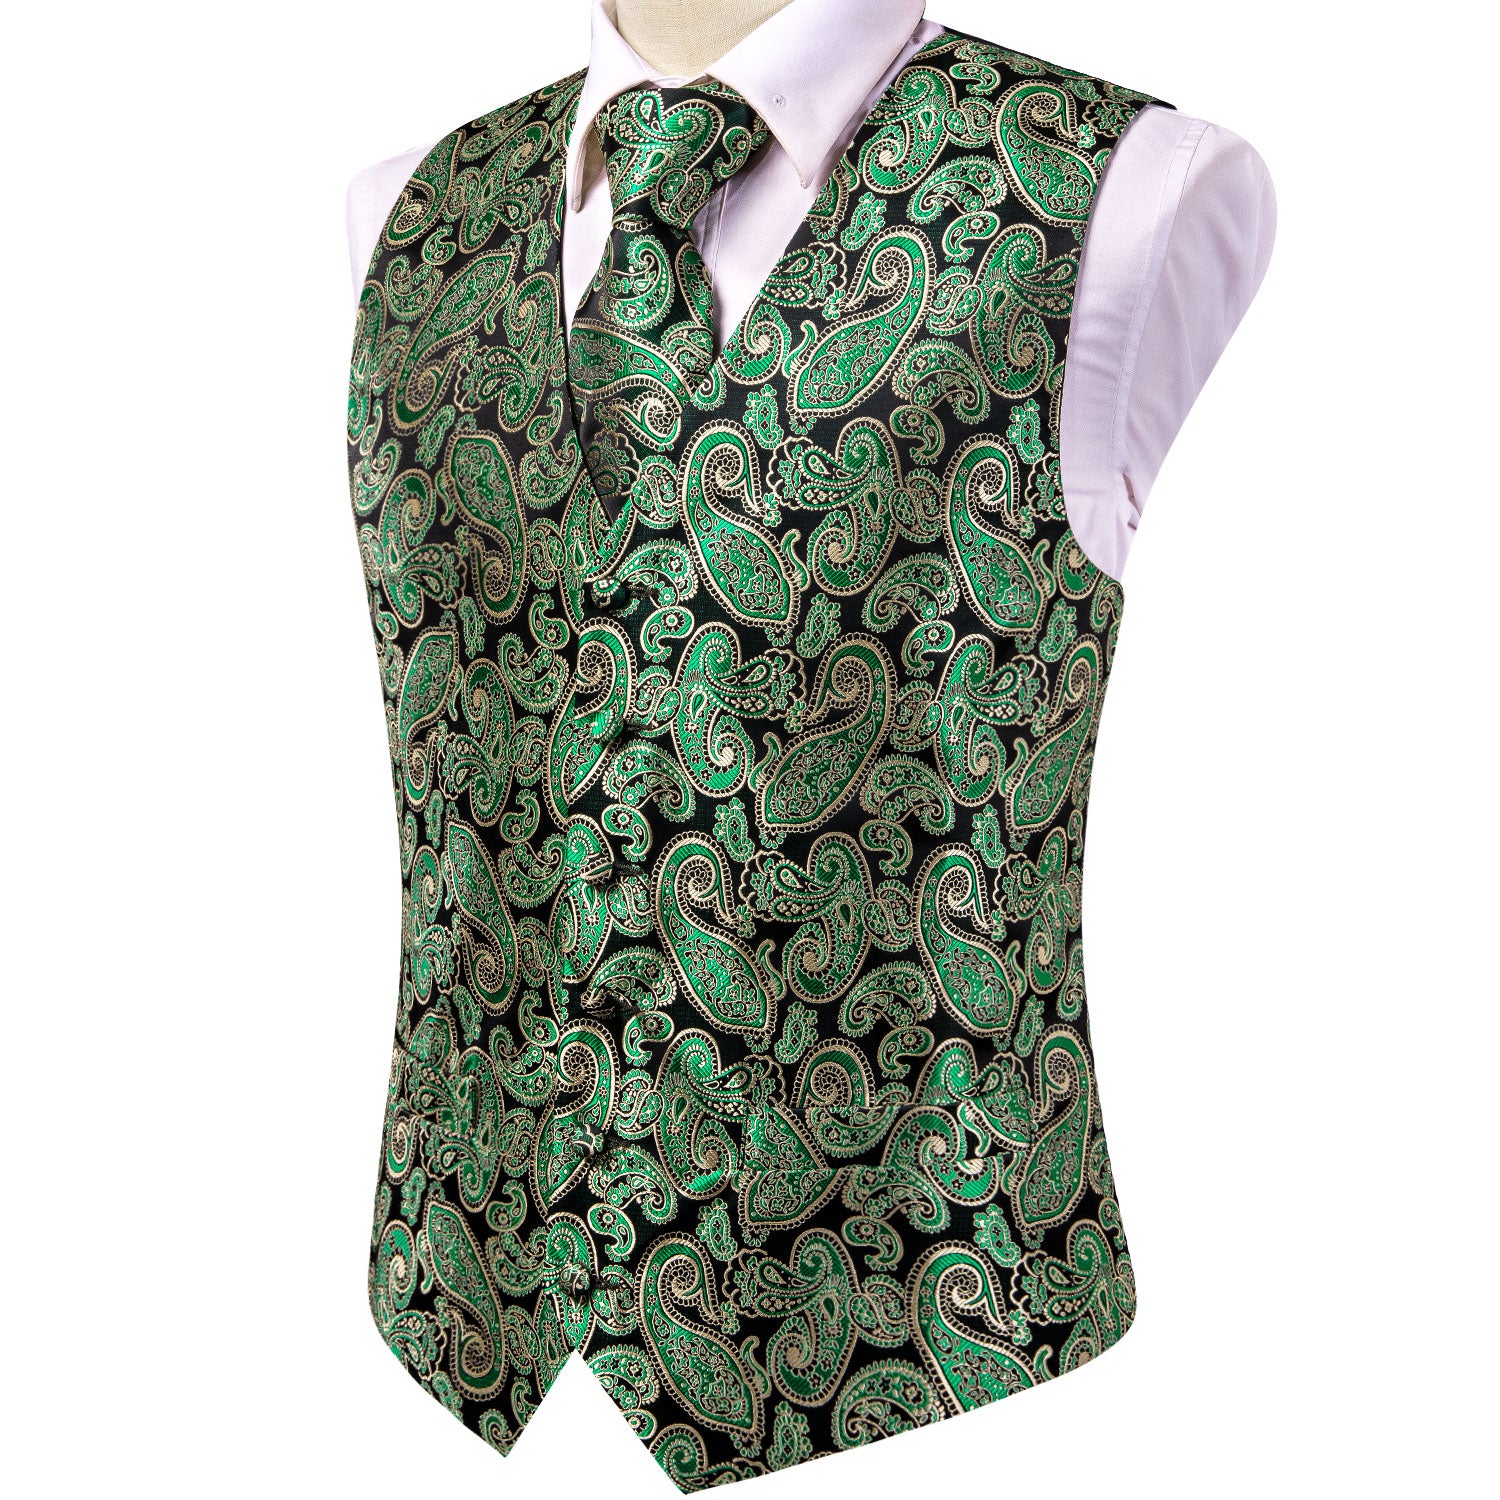 Classic Emerald Green Paisley Silk Men's Vest Hanky Cufflinks Tie Set Waistcoat Suit Set